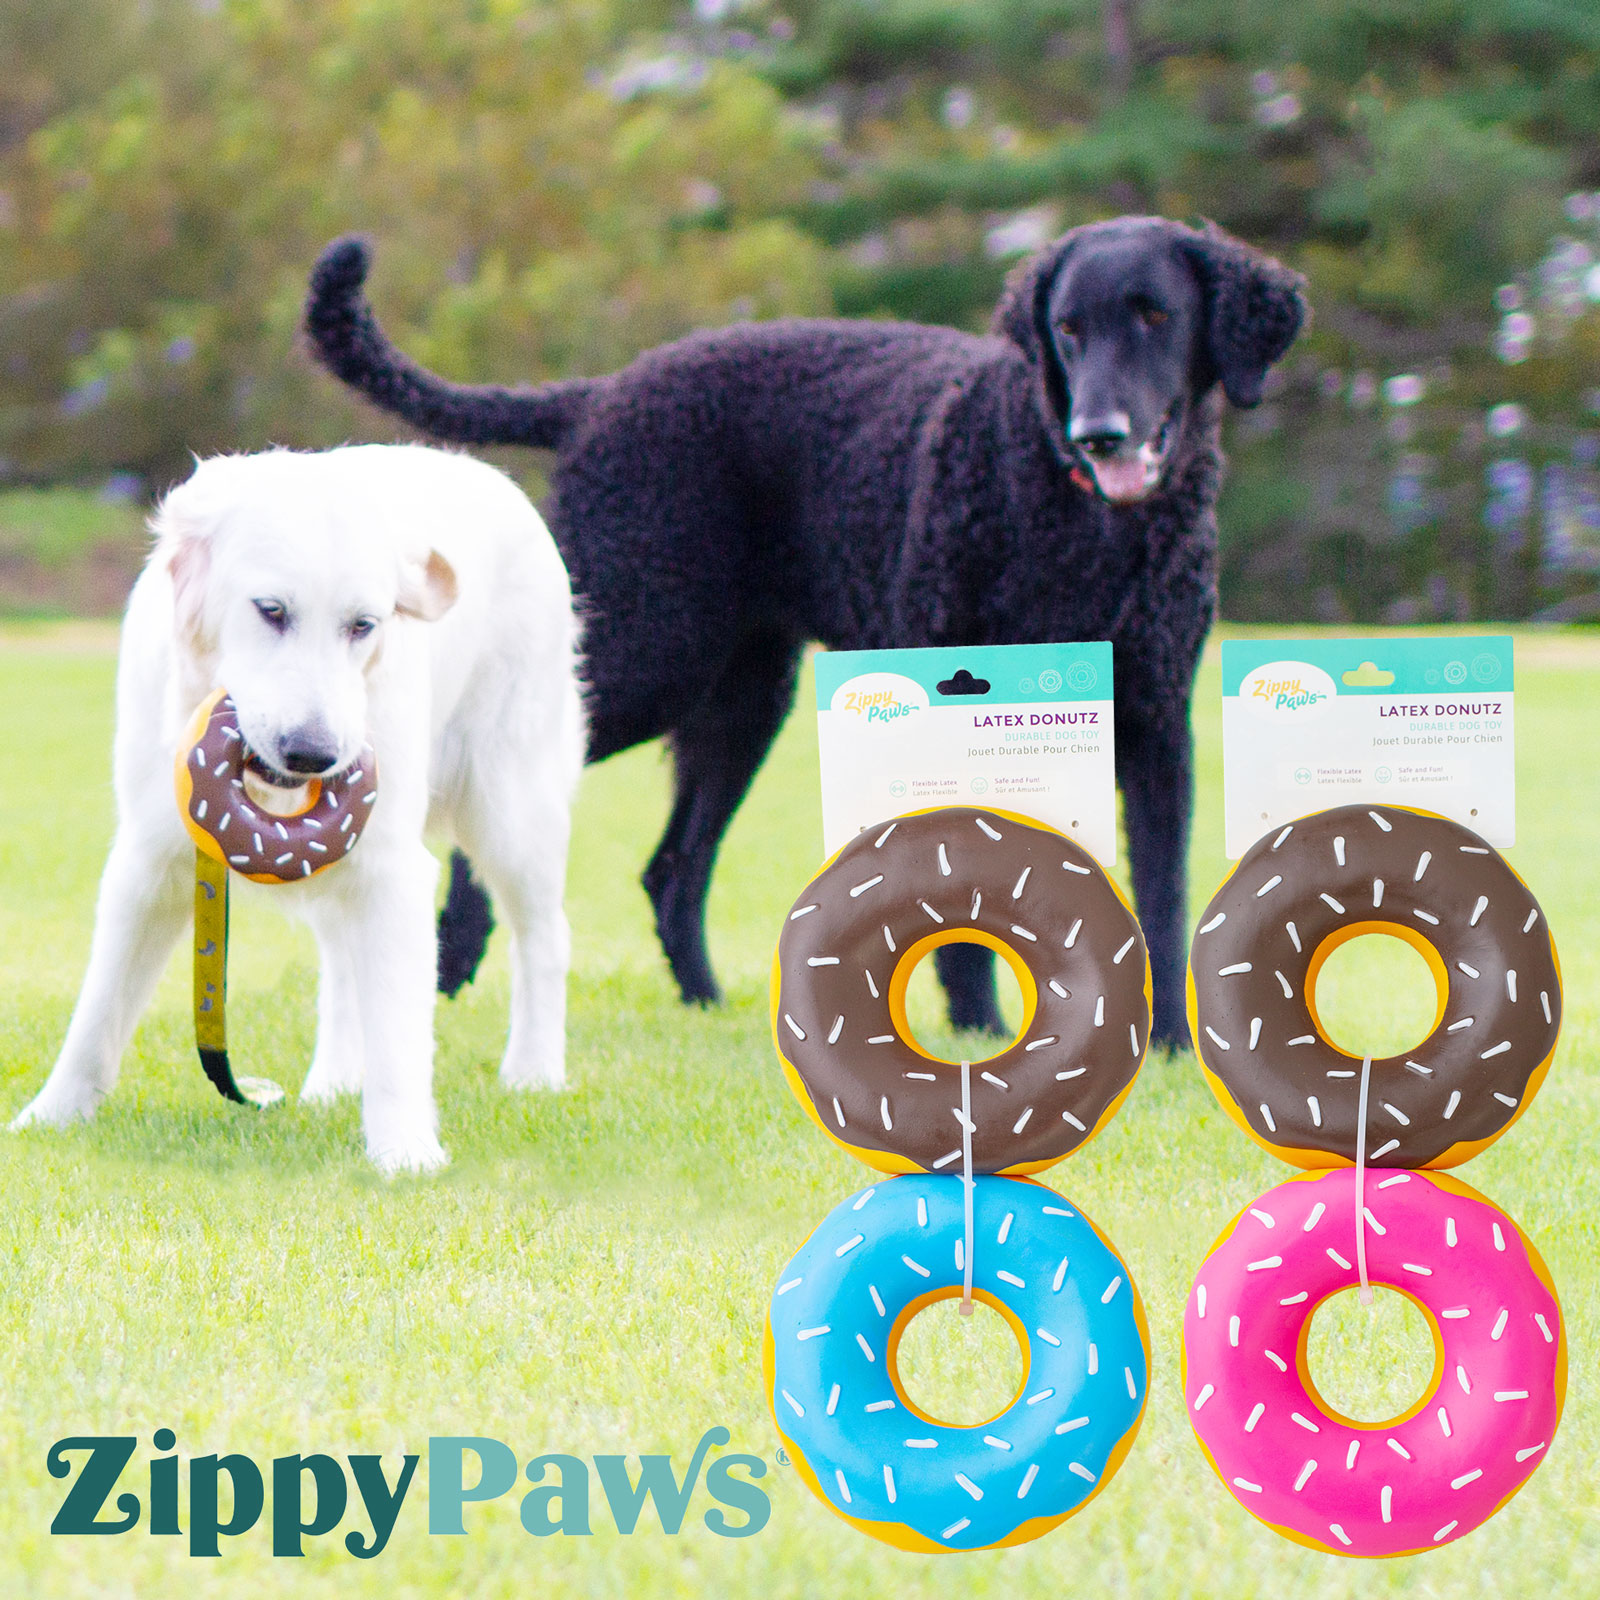 ZippyPaws ラテックス ドーナッツ 2個パック レギュラーサイズ ジッピーポウズ 中型犬 大型犬 おもちゃ ラテックス トイ スクイーカー付 カラフル ドーナツ 海外ブランド 輸入品